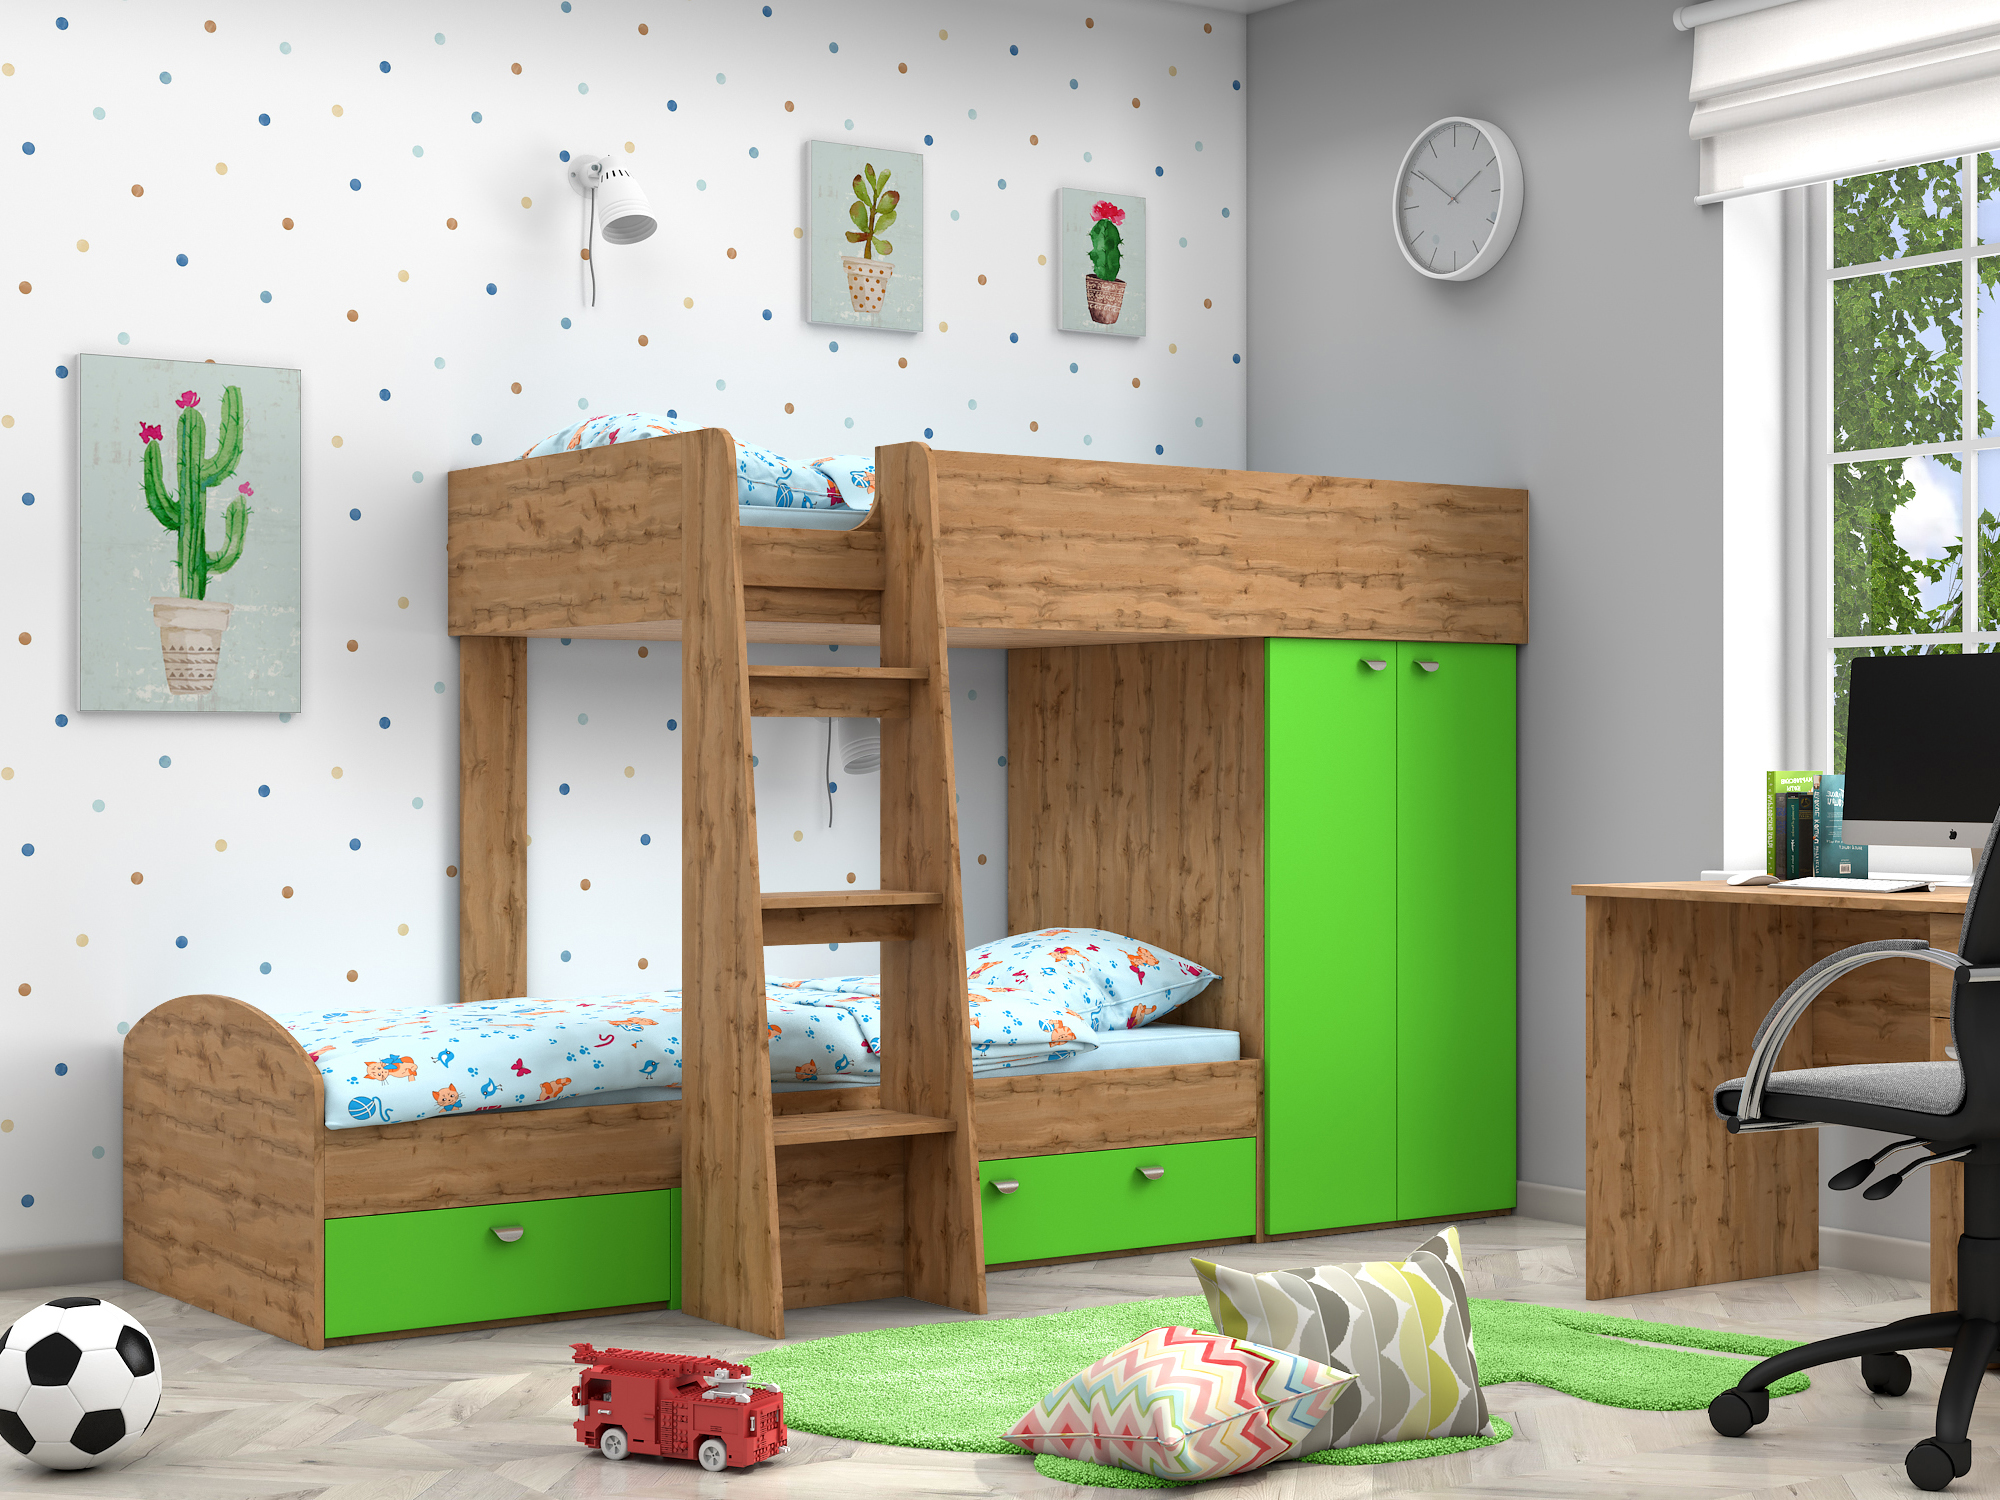 Двухъярусная кровать Golden Kids-2 (90х200) Зеленый, Бежевый, ЛДСП двухъярусная кровать golden kids 2 90х200 венге коричневый темный бежевый лдсп